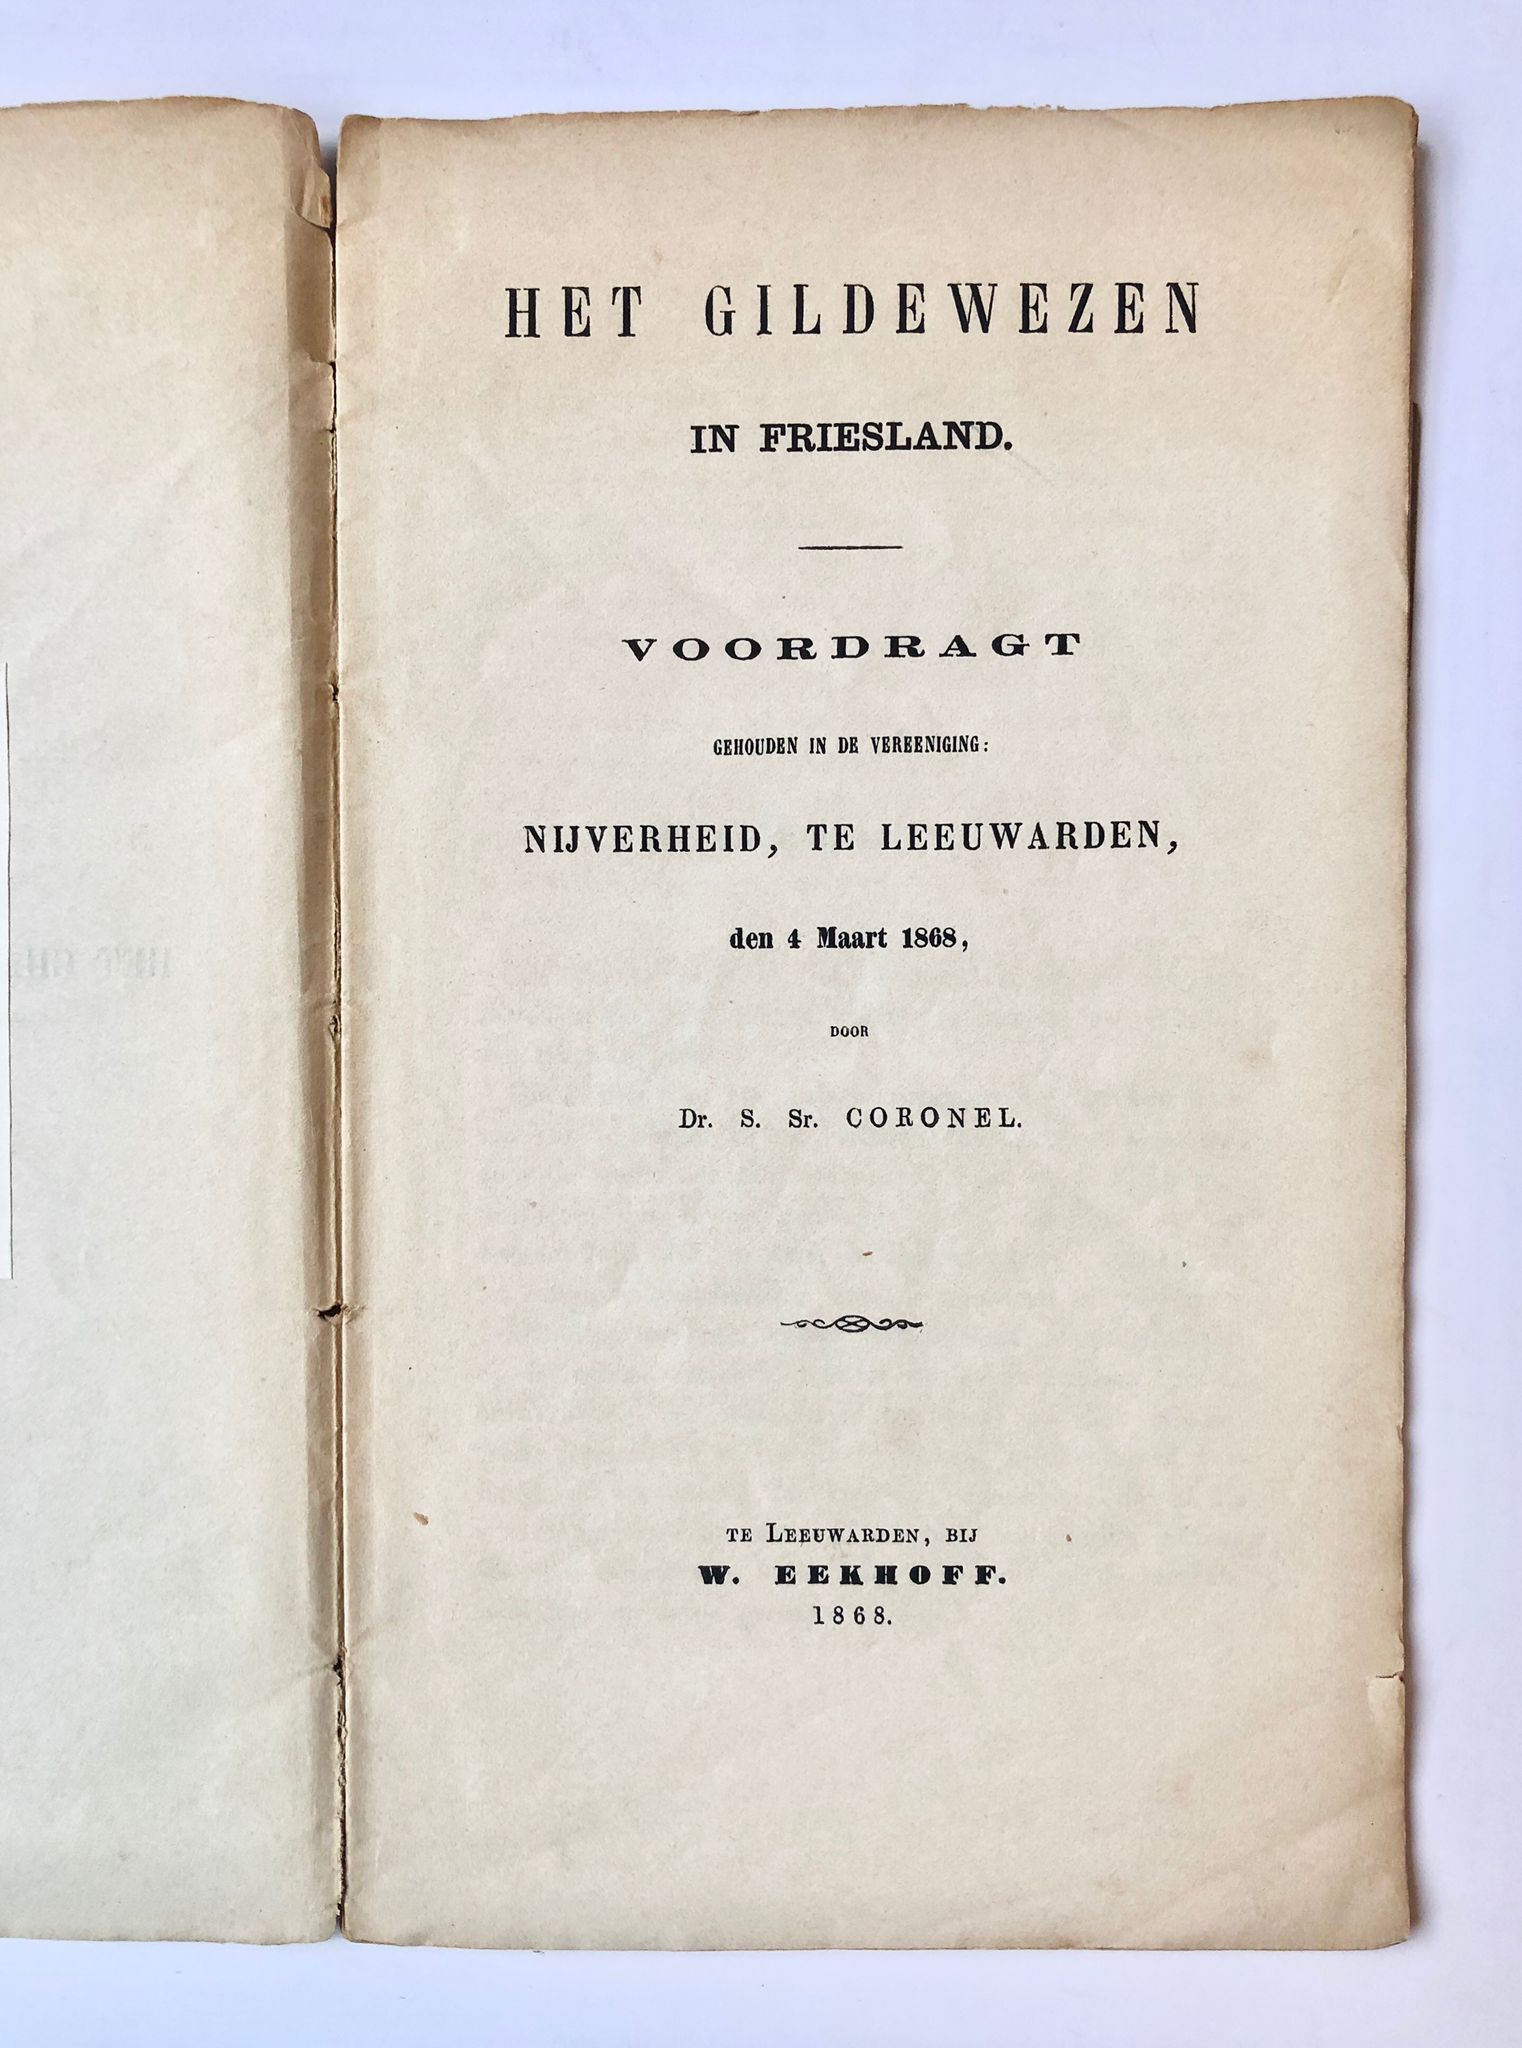 [Friesland, 1868] Het gildewezen in Friesland. Voordragt gehouden in de vereeniging: Nijverheid, te Leeuwarden, den 4 Maart 1868, W. Eekhoff, Te Leeuwarden, 1868, 33 pp.